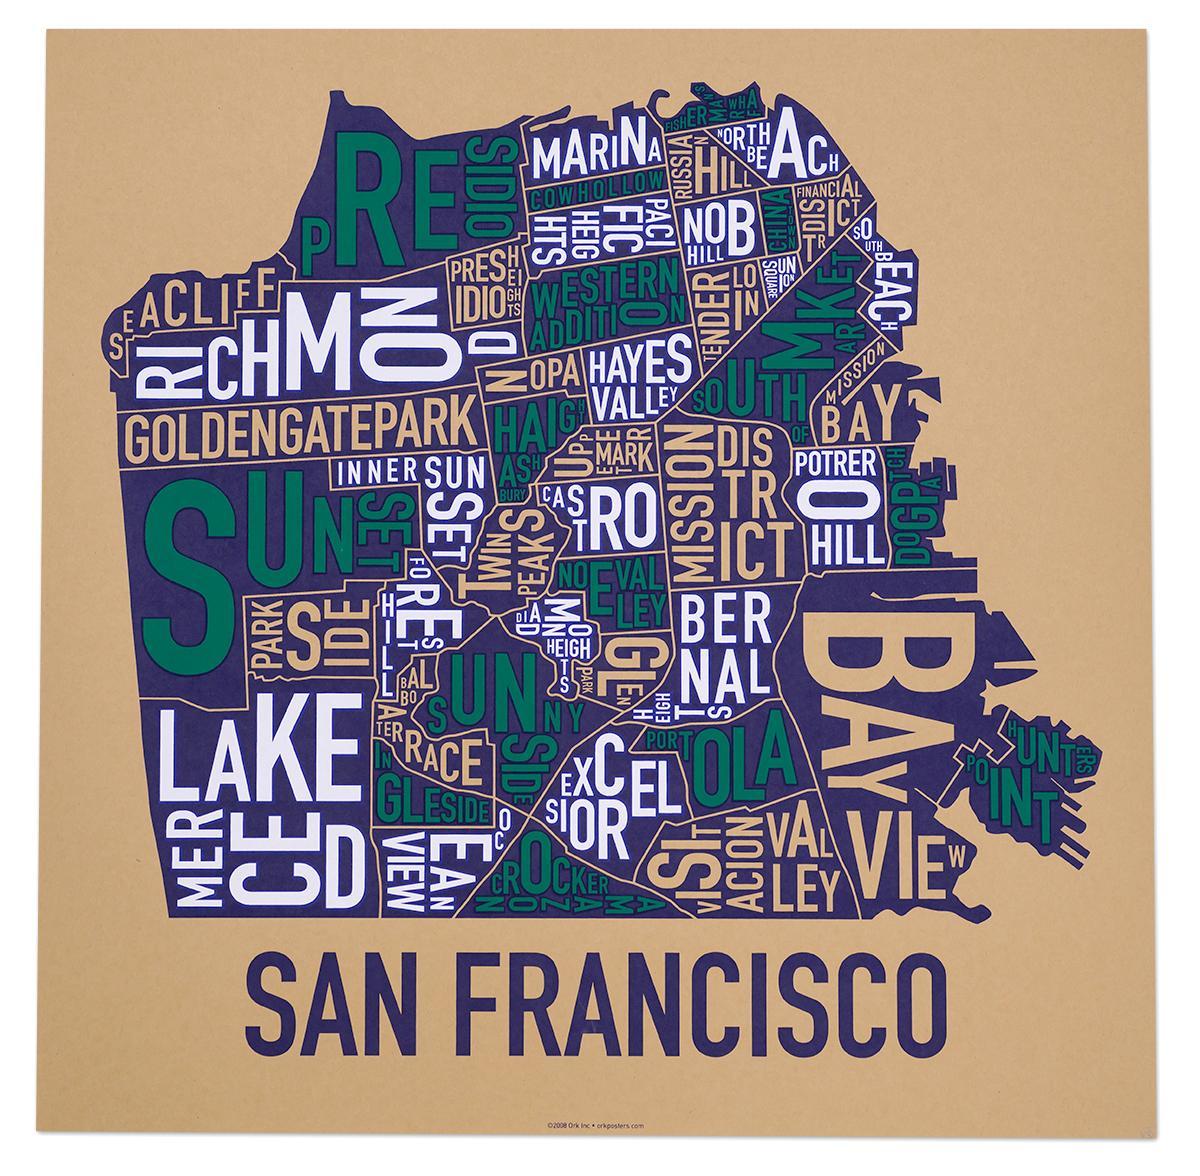 San Francisco, le quartier de la carte affiche